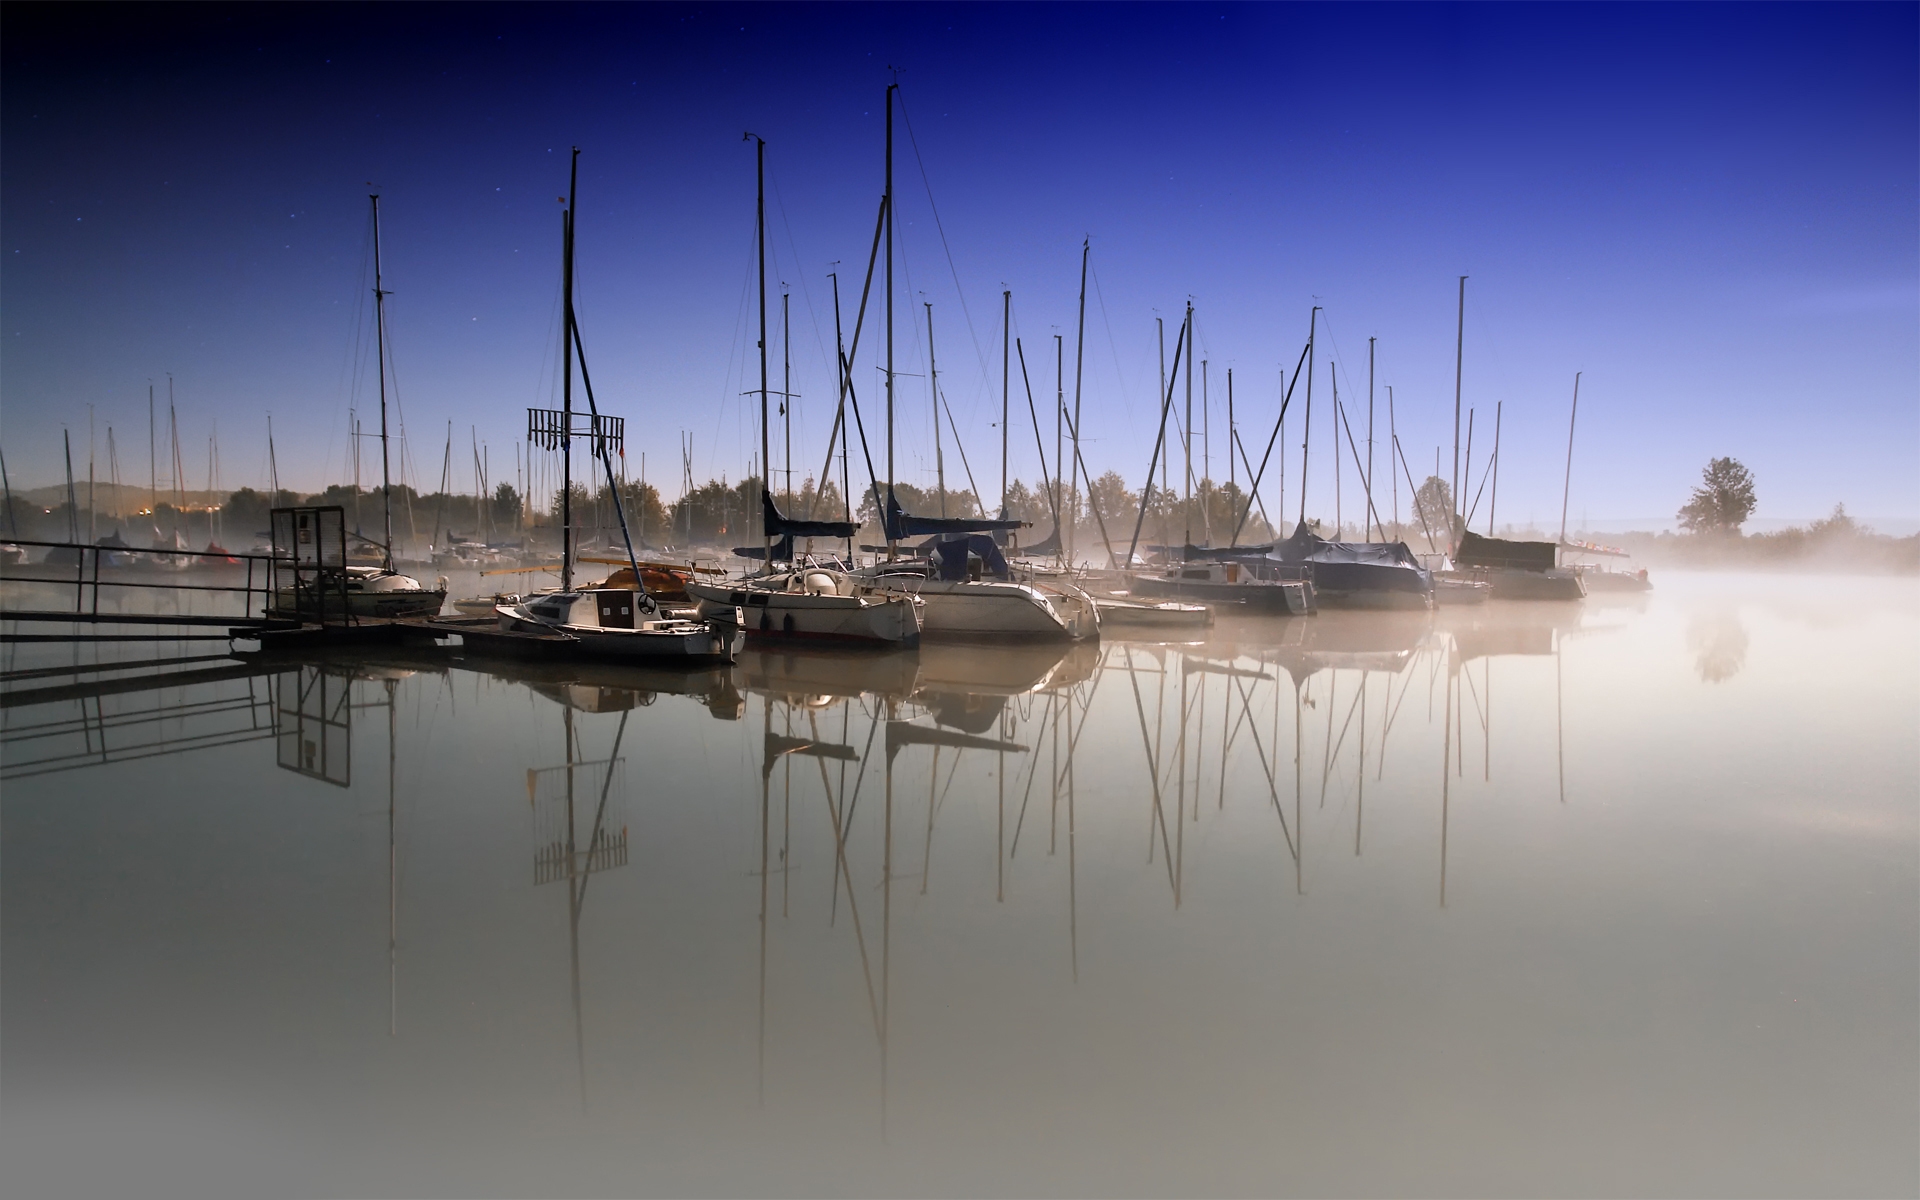 Картинки Лодки, причал, туман, гладкая поверхность воды, парусники, утро фото и обои на рабочий стол